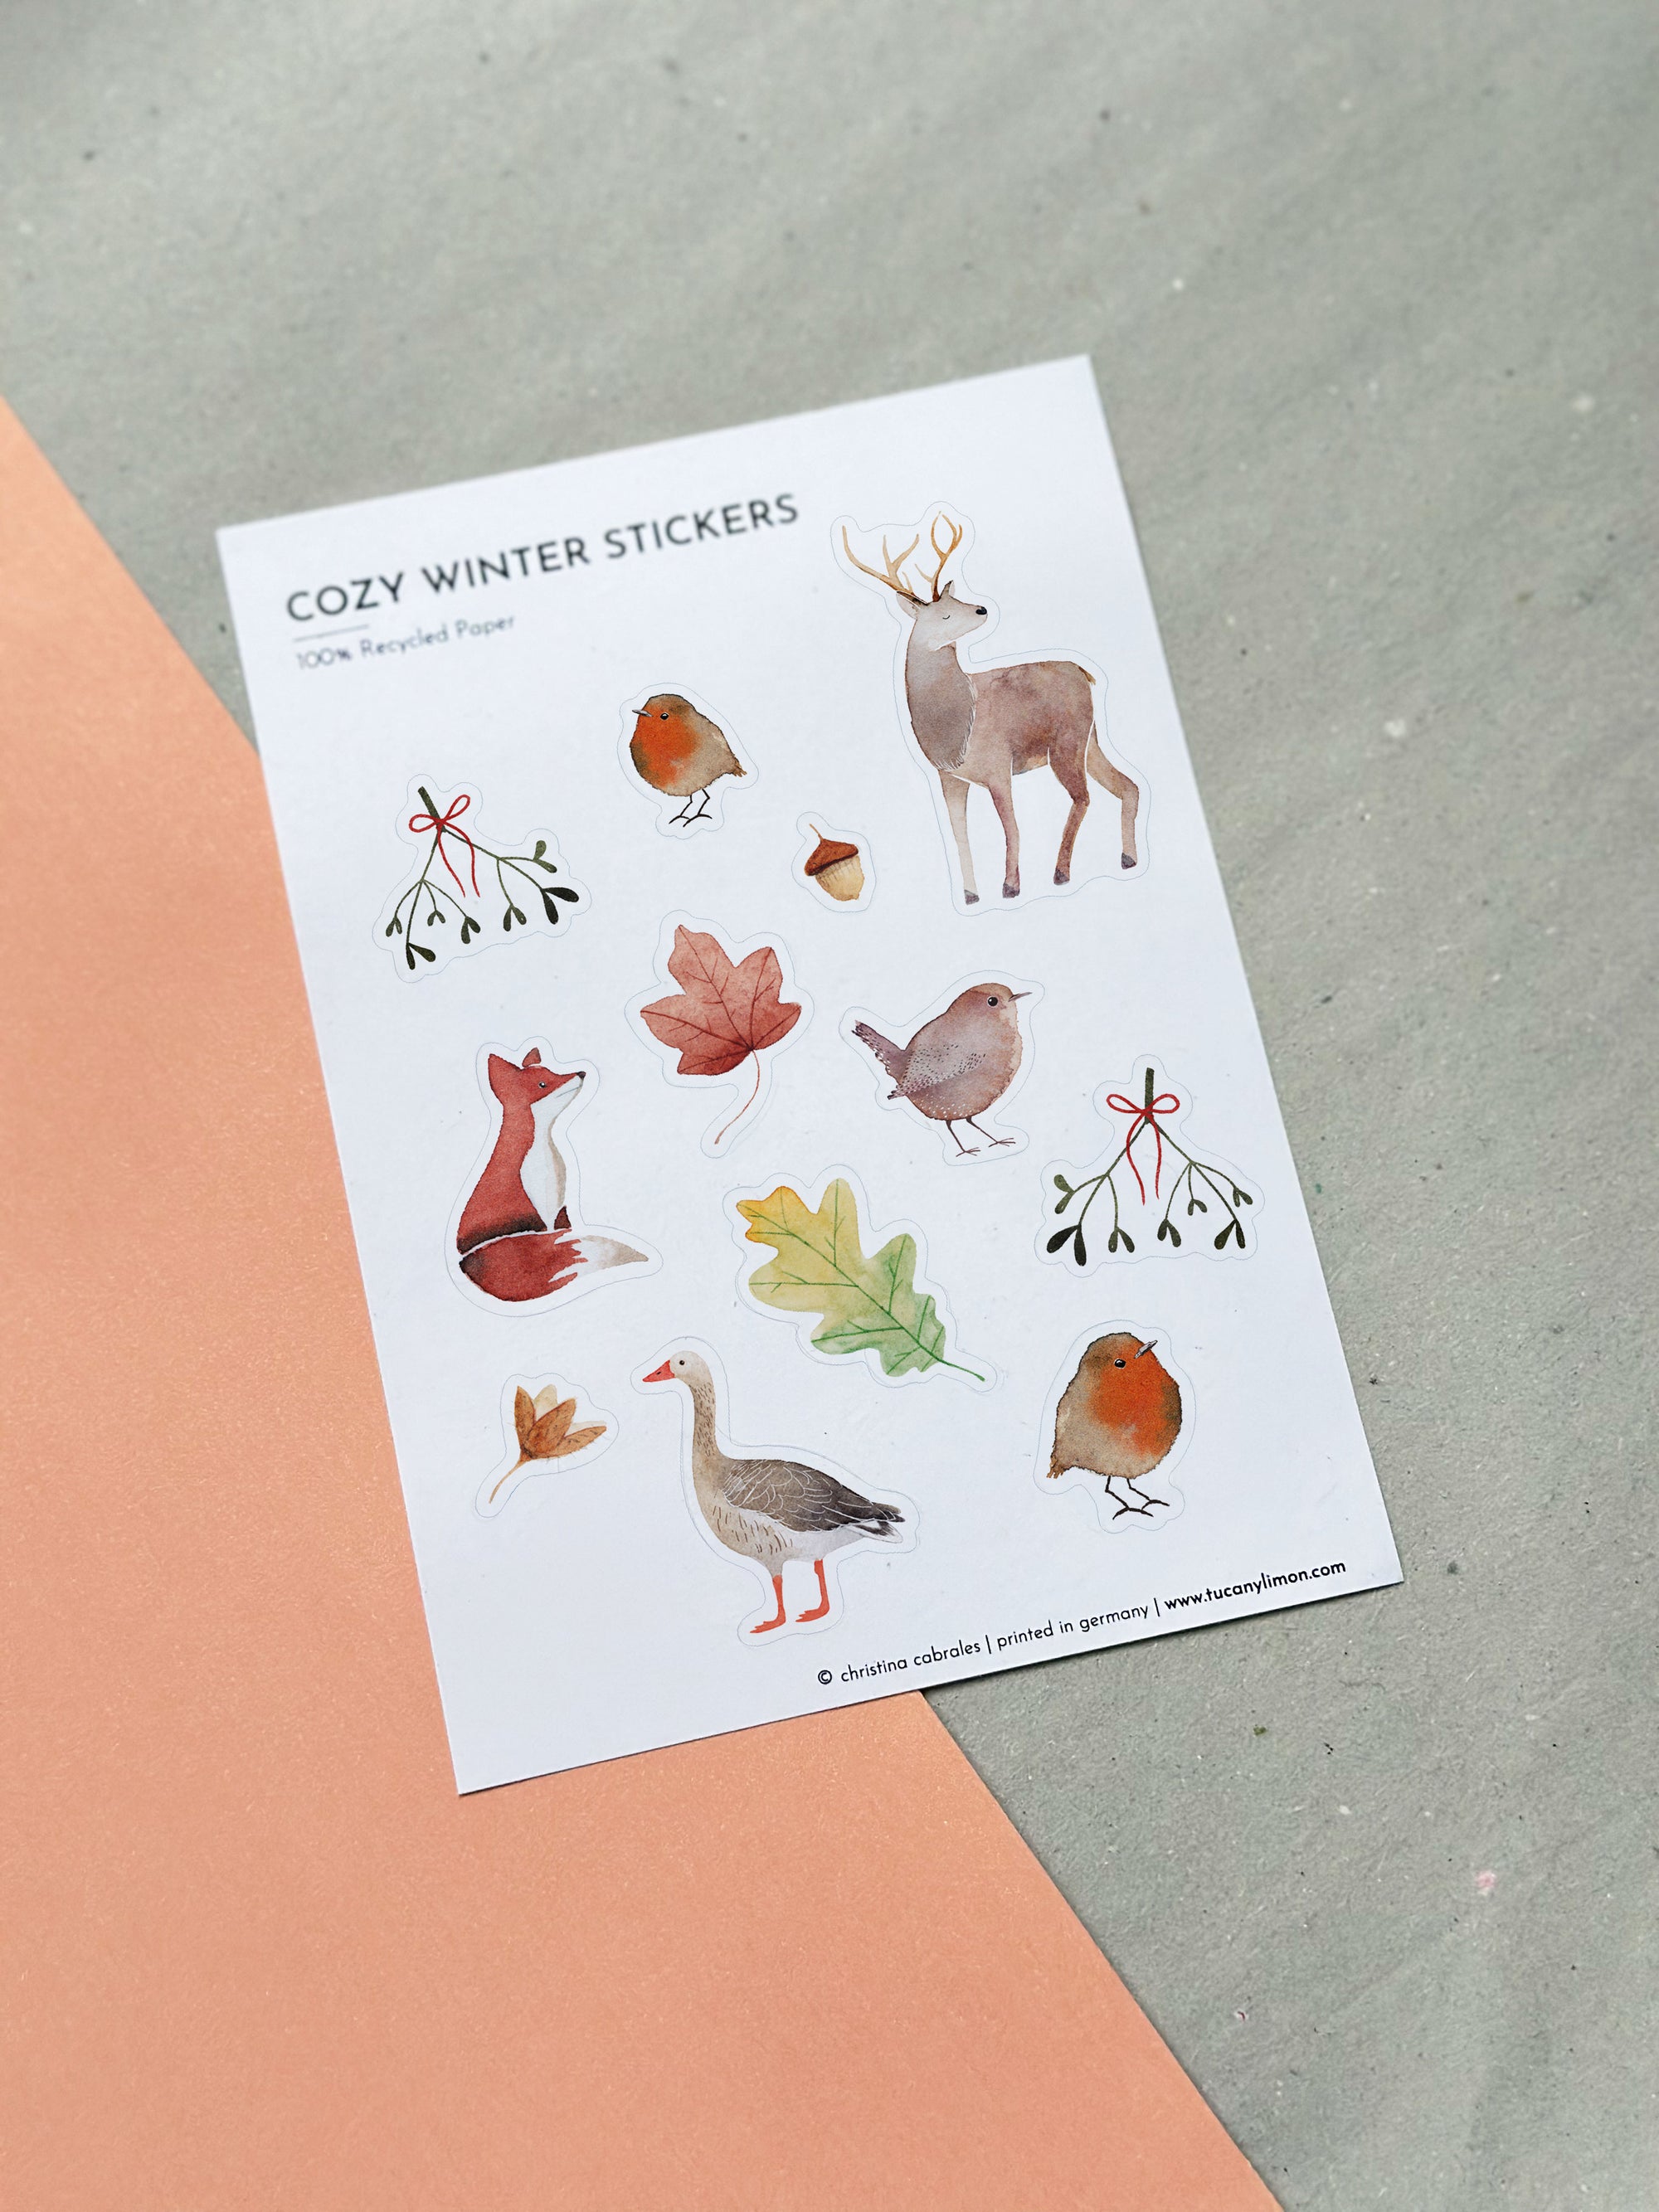 Cozy Winter Sticker aus Recyclingpapier / ohne PVC